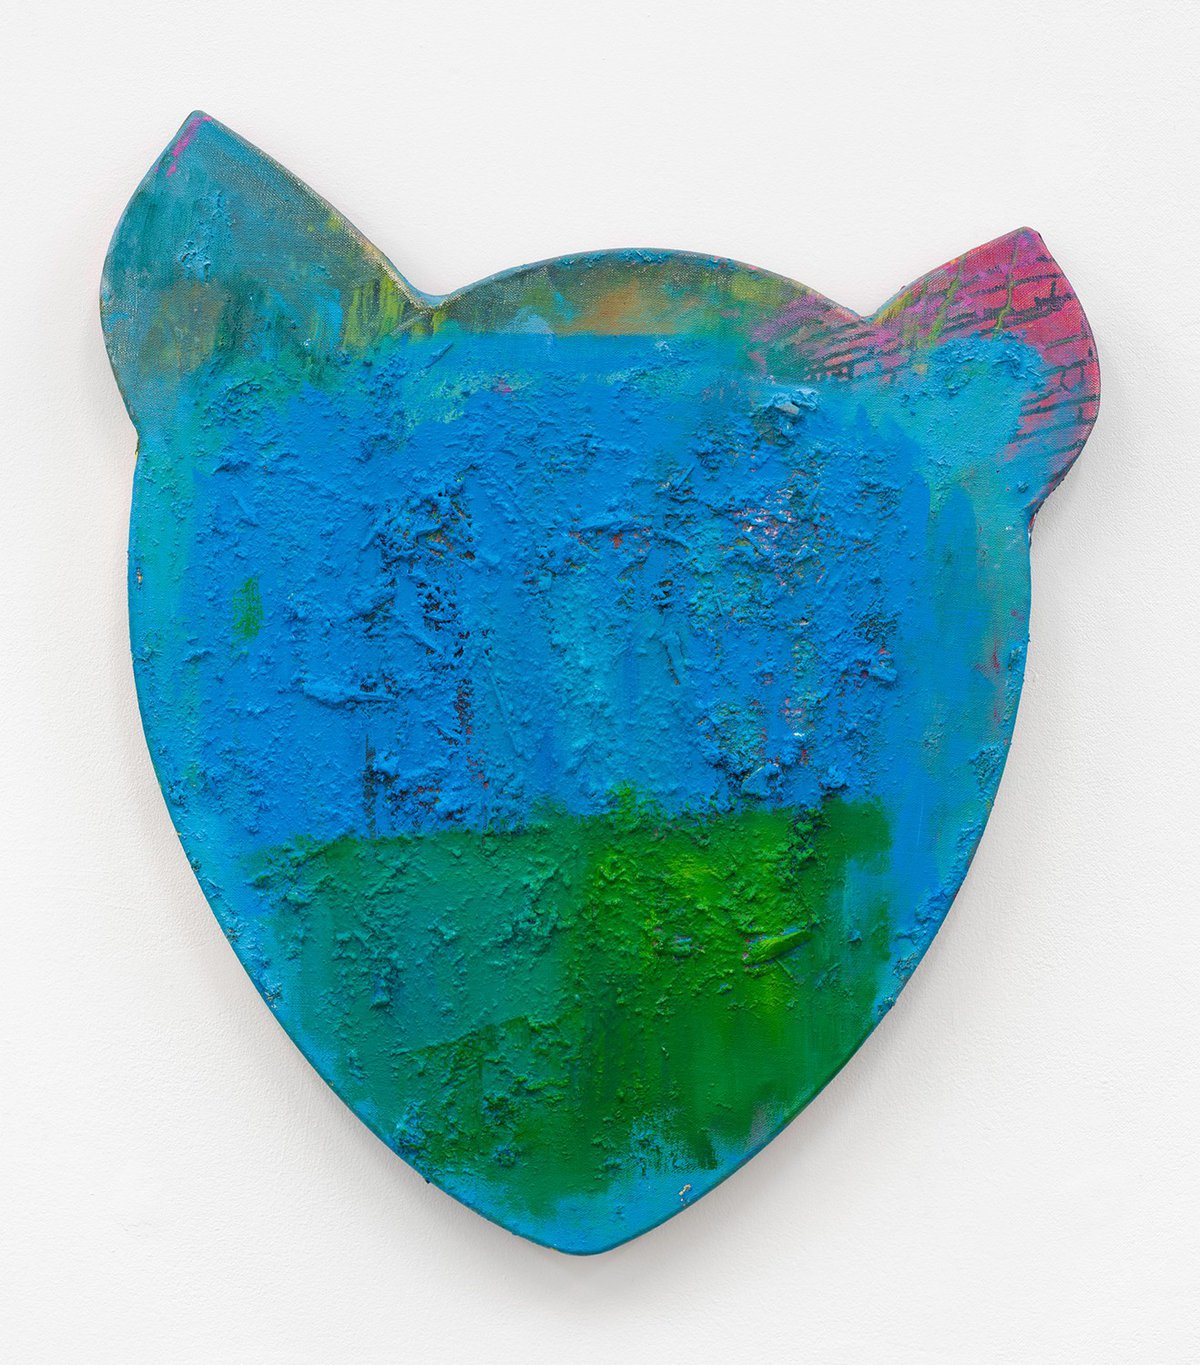 Franz AmannNo.5, 2014Oil, sawdust and glue on shaped canvas88 x 74 x 5 cm